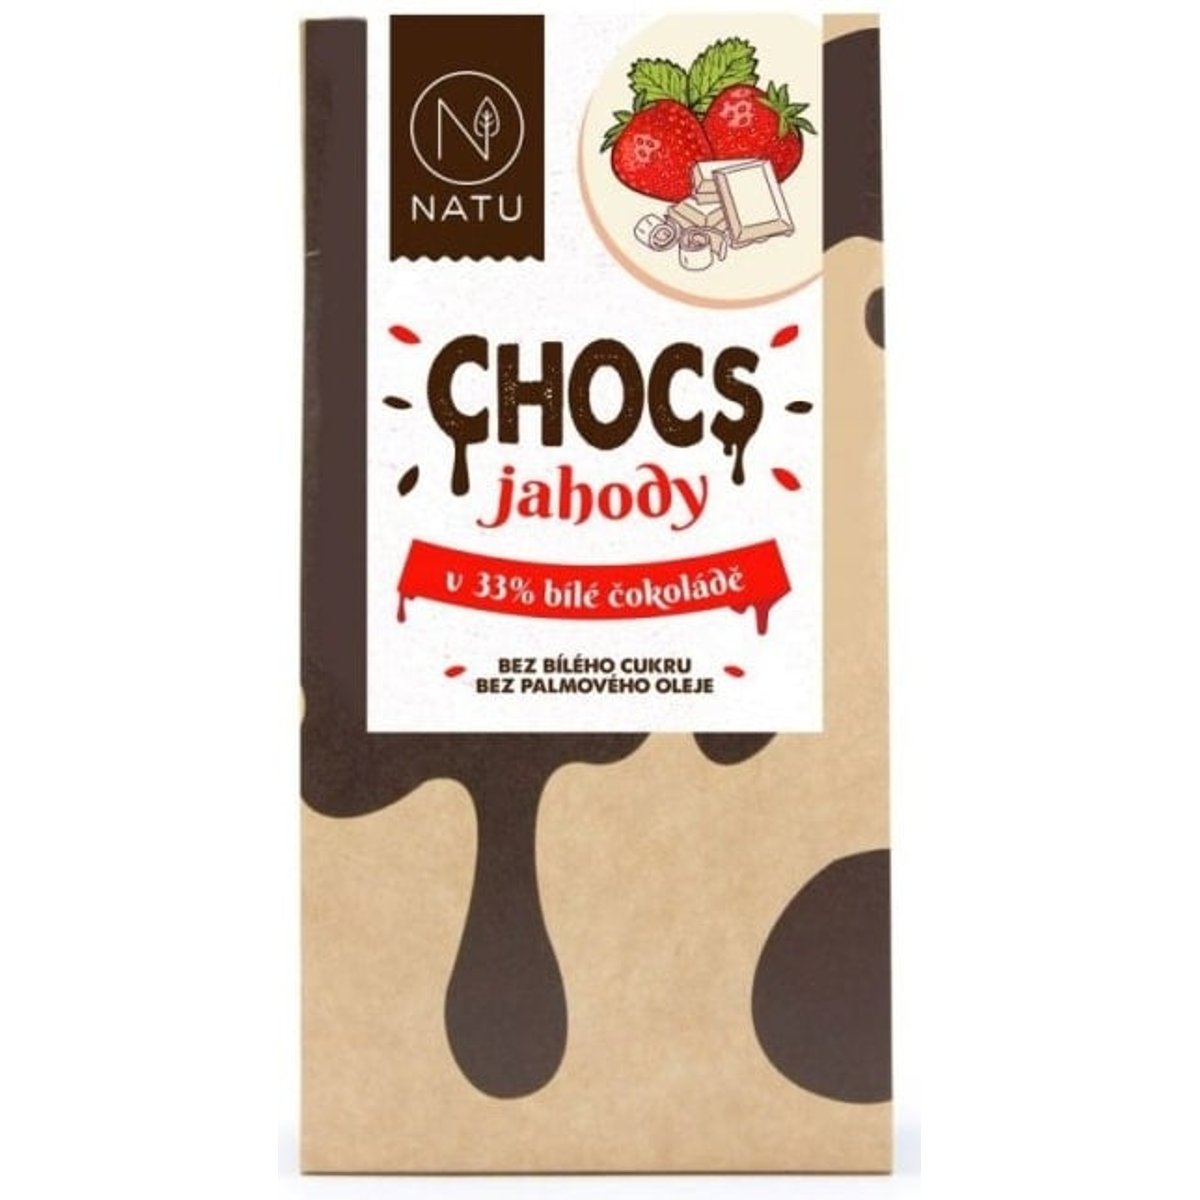 Natu Chocs Jahody v 33% bílé čokoládě